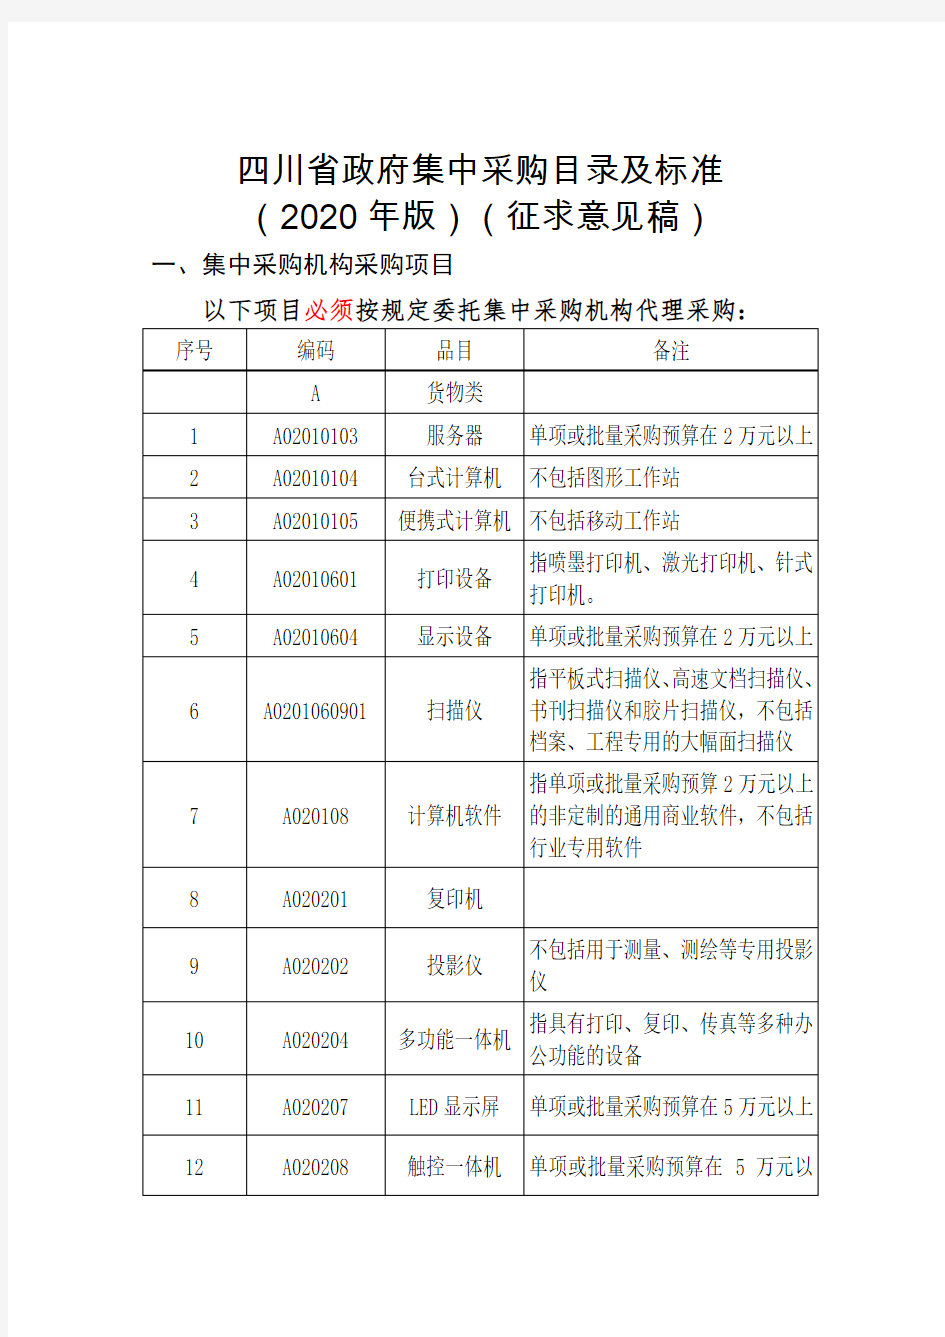 四川省政府集中采购目录及标准 2020年征求意见稿